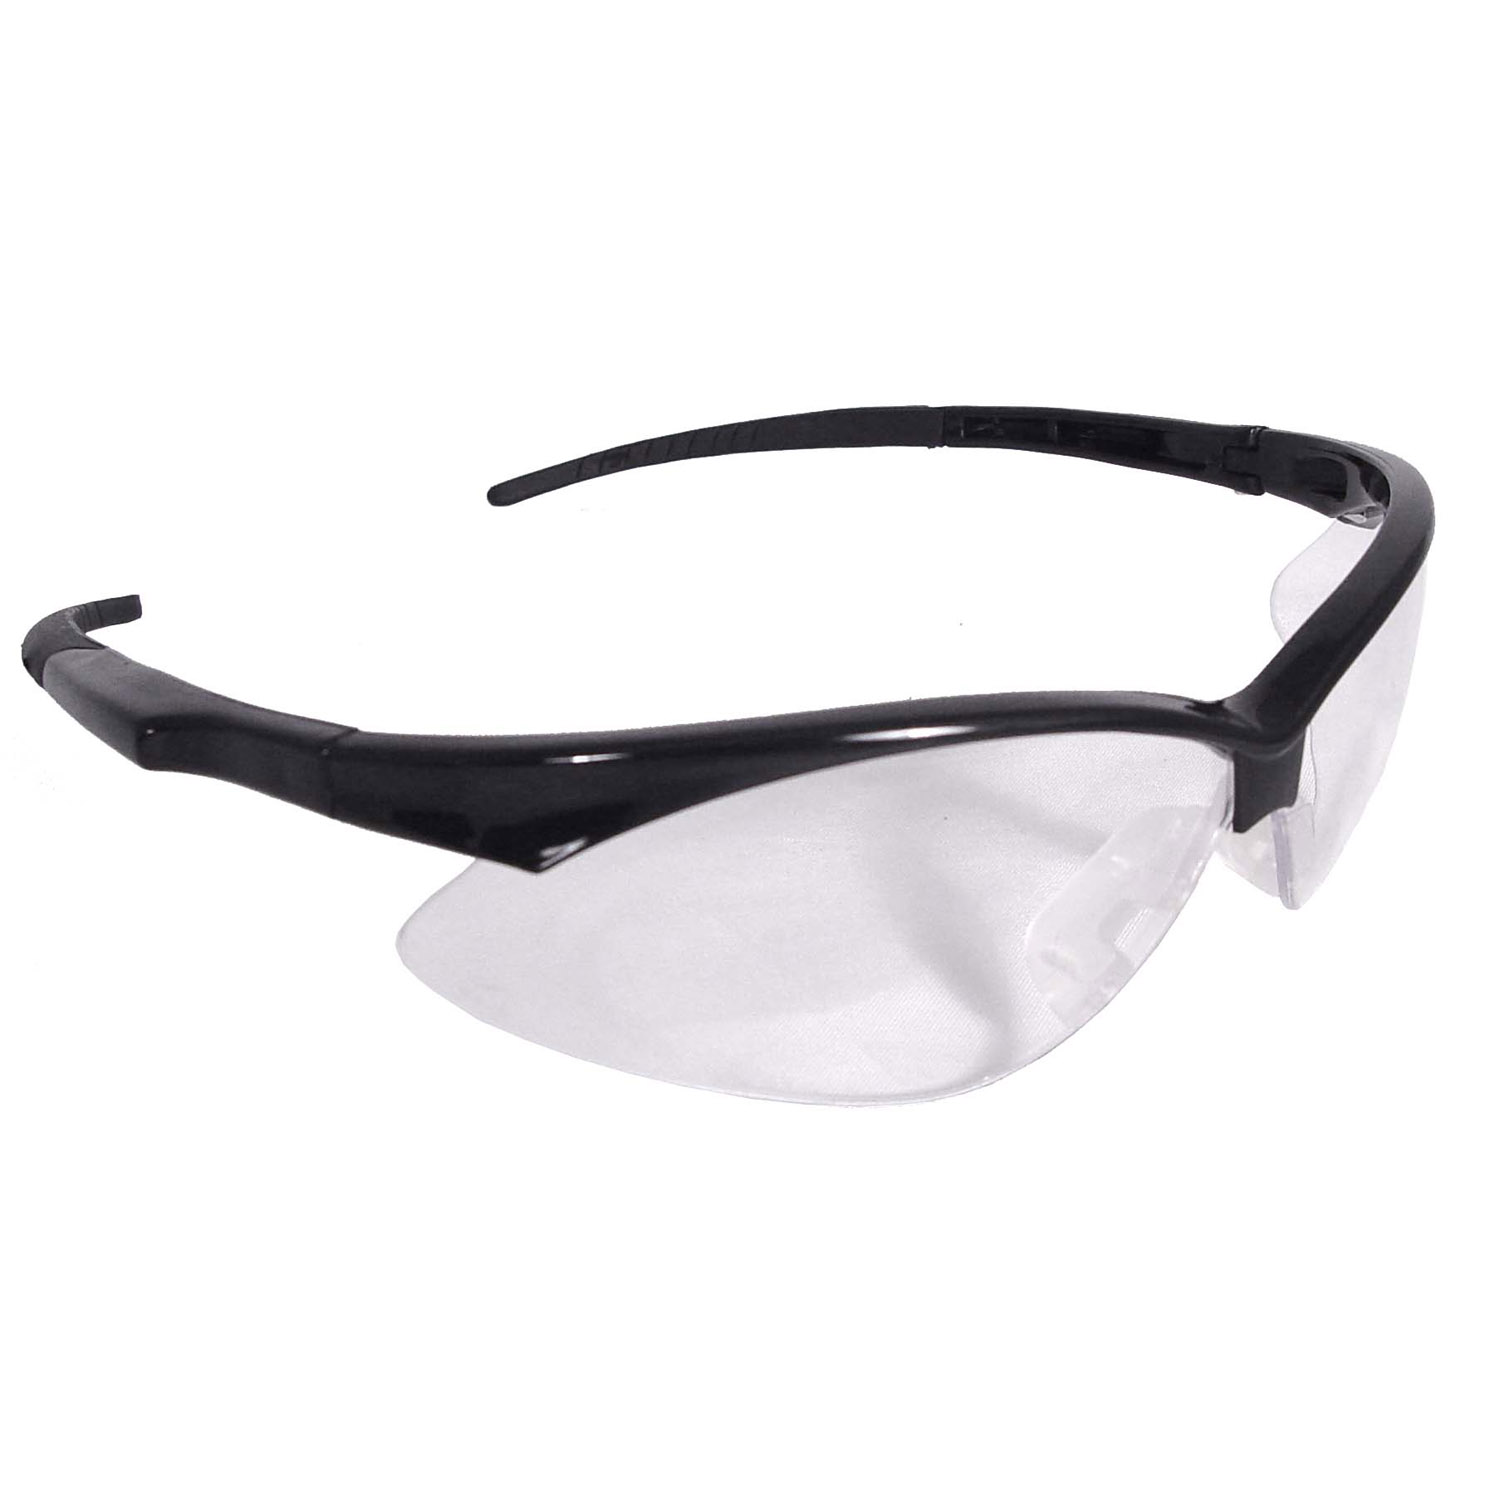 Rad-Apocalypse™ Safety Eyewear - Black Frame - Clear Anti-Fog Lens - Anti-Fog Lens